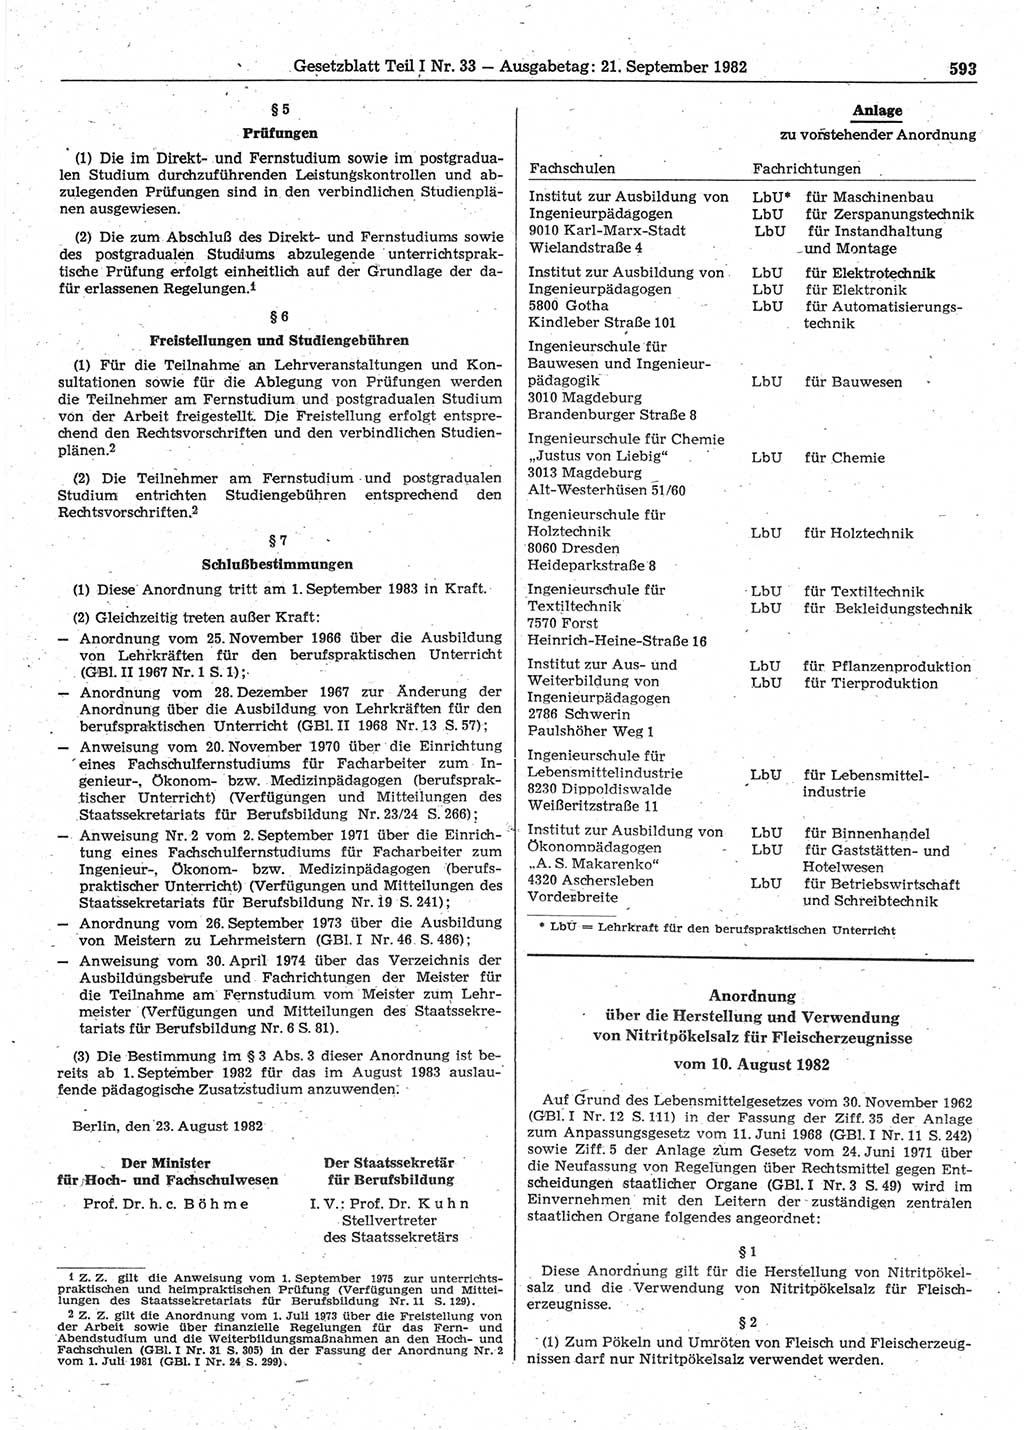 Gesetzblatt (GBl.) der Deutschen Demokratischen Republik (DDR) Teil Ⅰ 1982, Seite 593 (GBl. DDR Ⅰ 1982, S. 593)